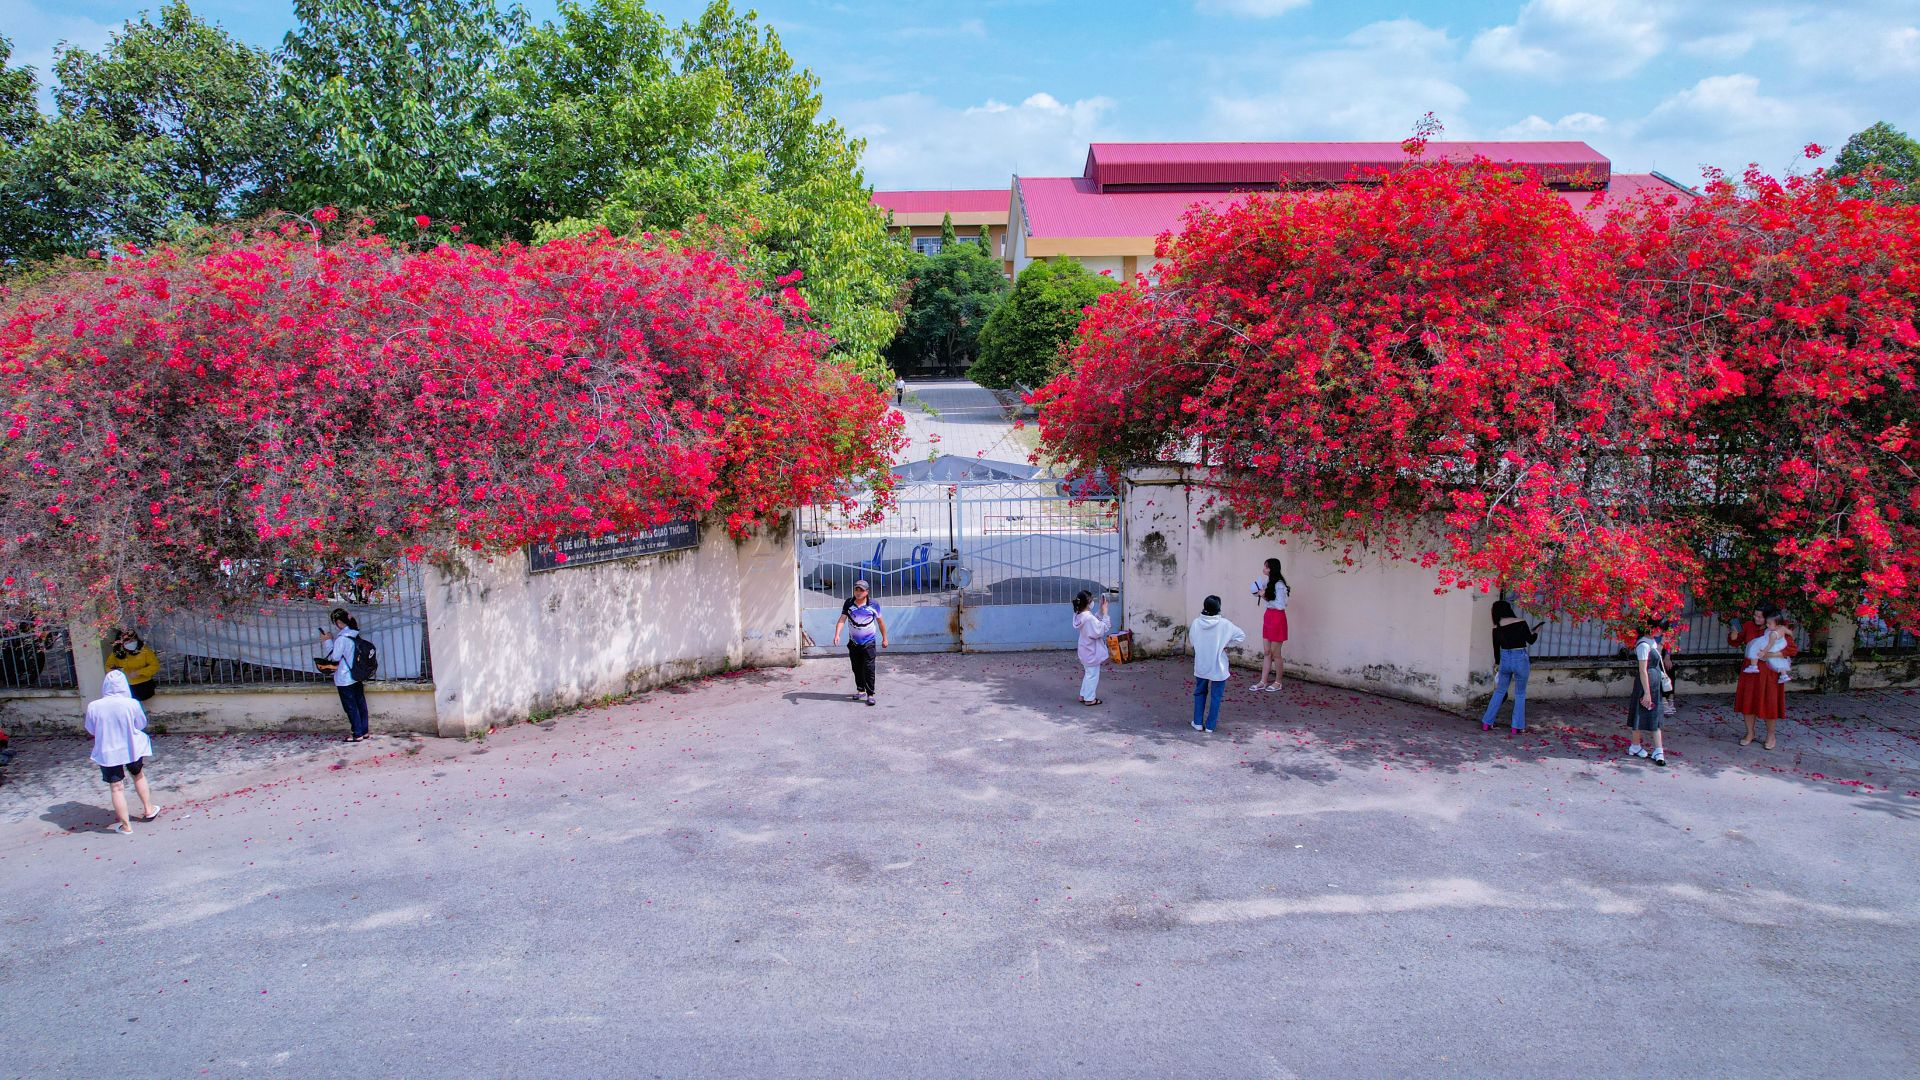 Một giàn hoa giấy tuôn bông đỏ không kịp cản đang xôn xao ở Tây Ninh, nhiều người đến chụp ảnh, ngắm say mê - Ảnh 3.